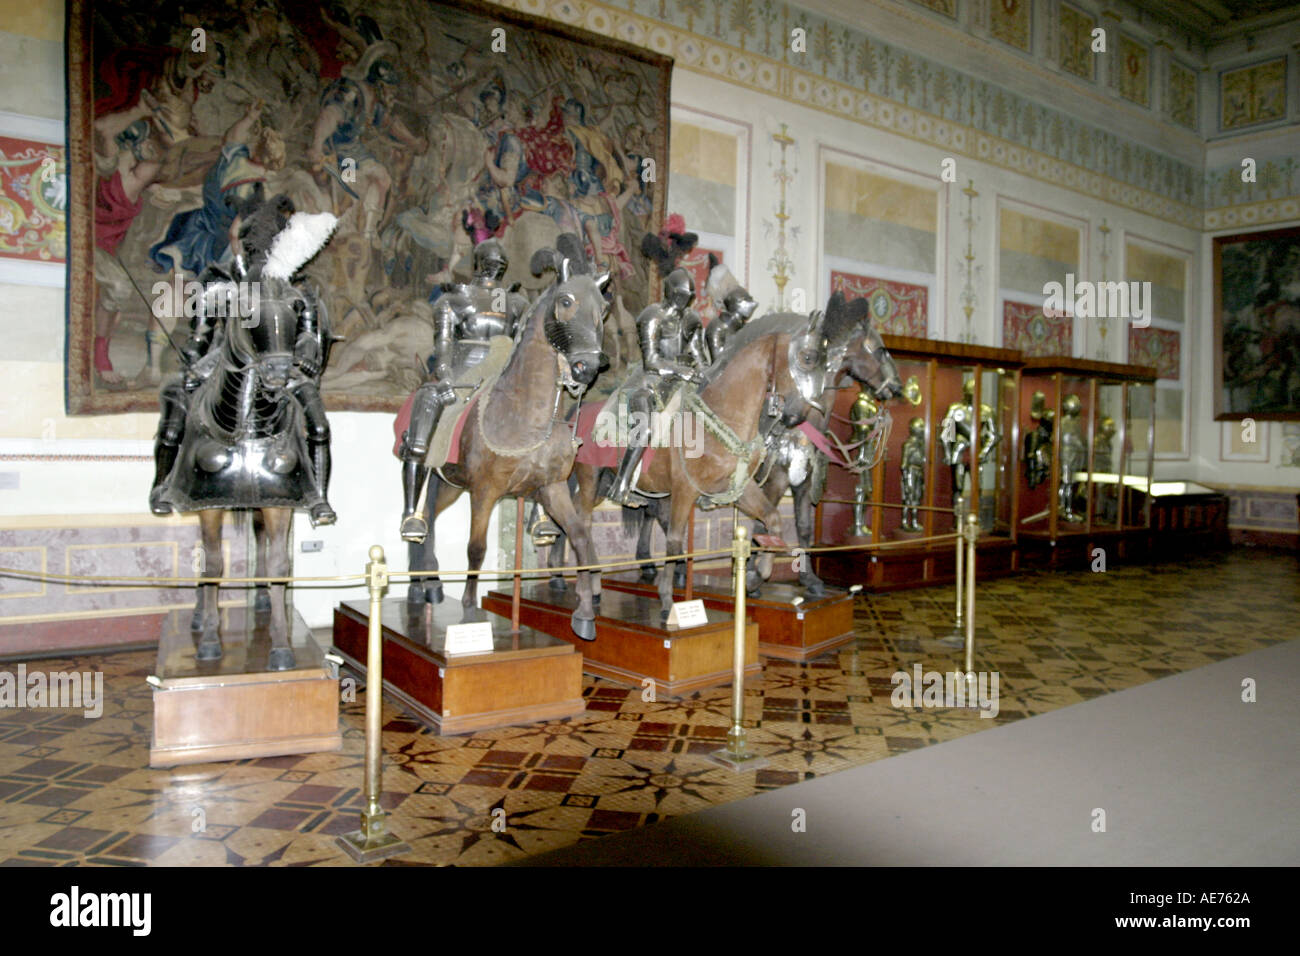 Das Eremitage-Museum, Ausstellung von Pferden und Ritter in Rüstung, St.Petersburg Russland Stockfoto